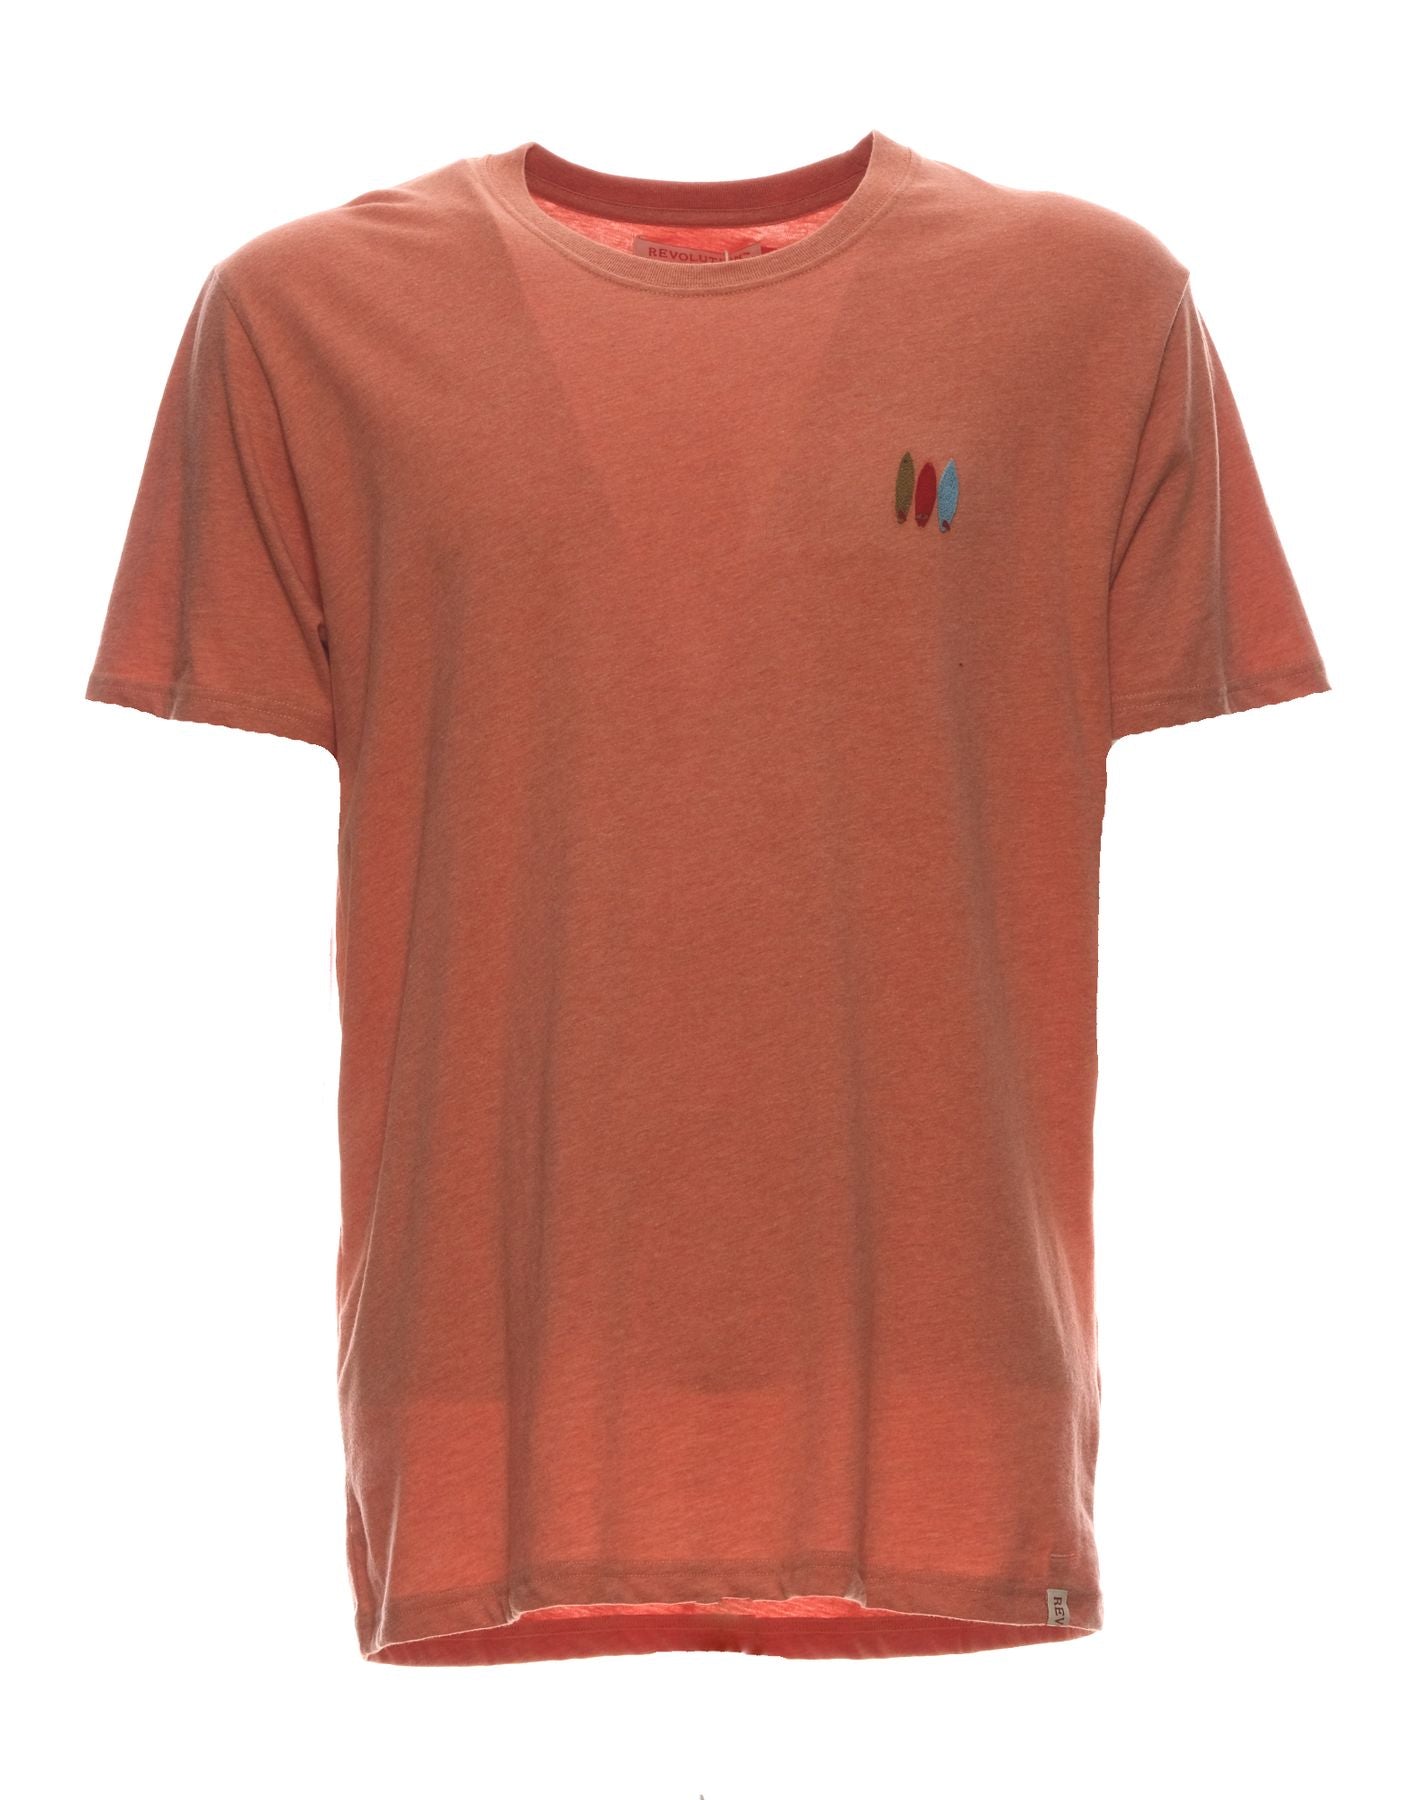 T-Shirt für Mann 1316 Orange Revolution